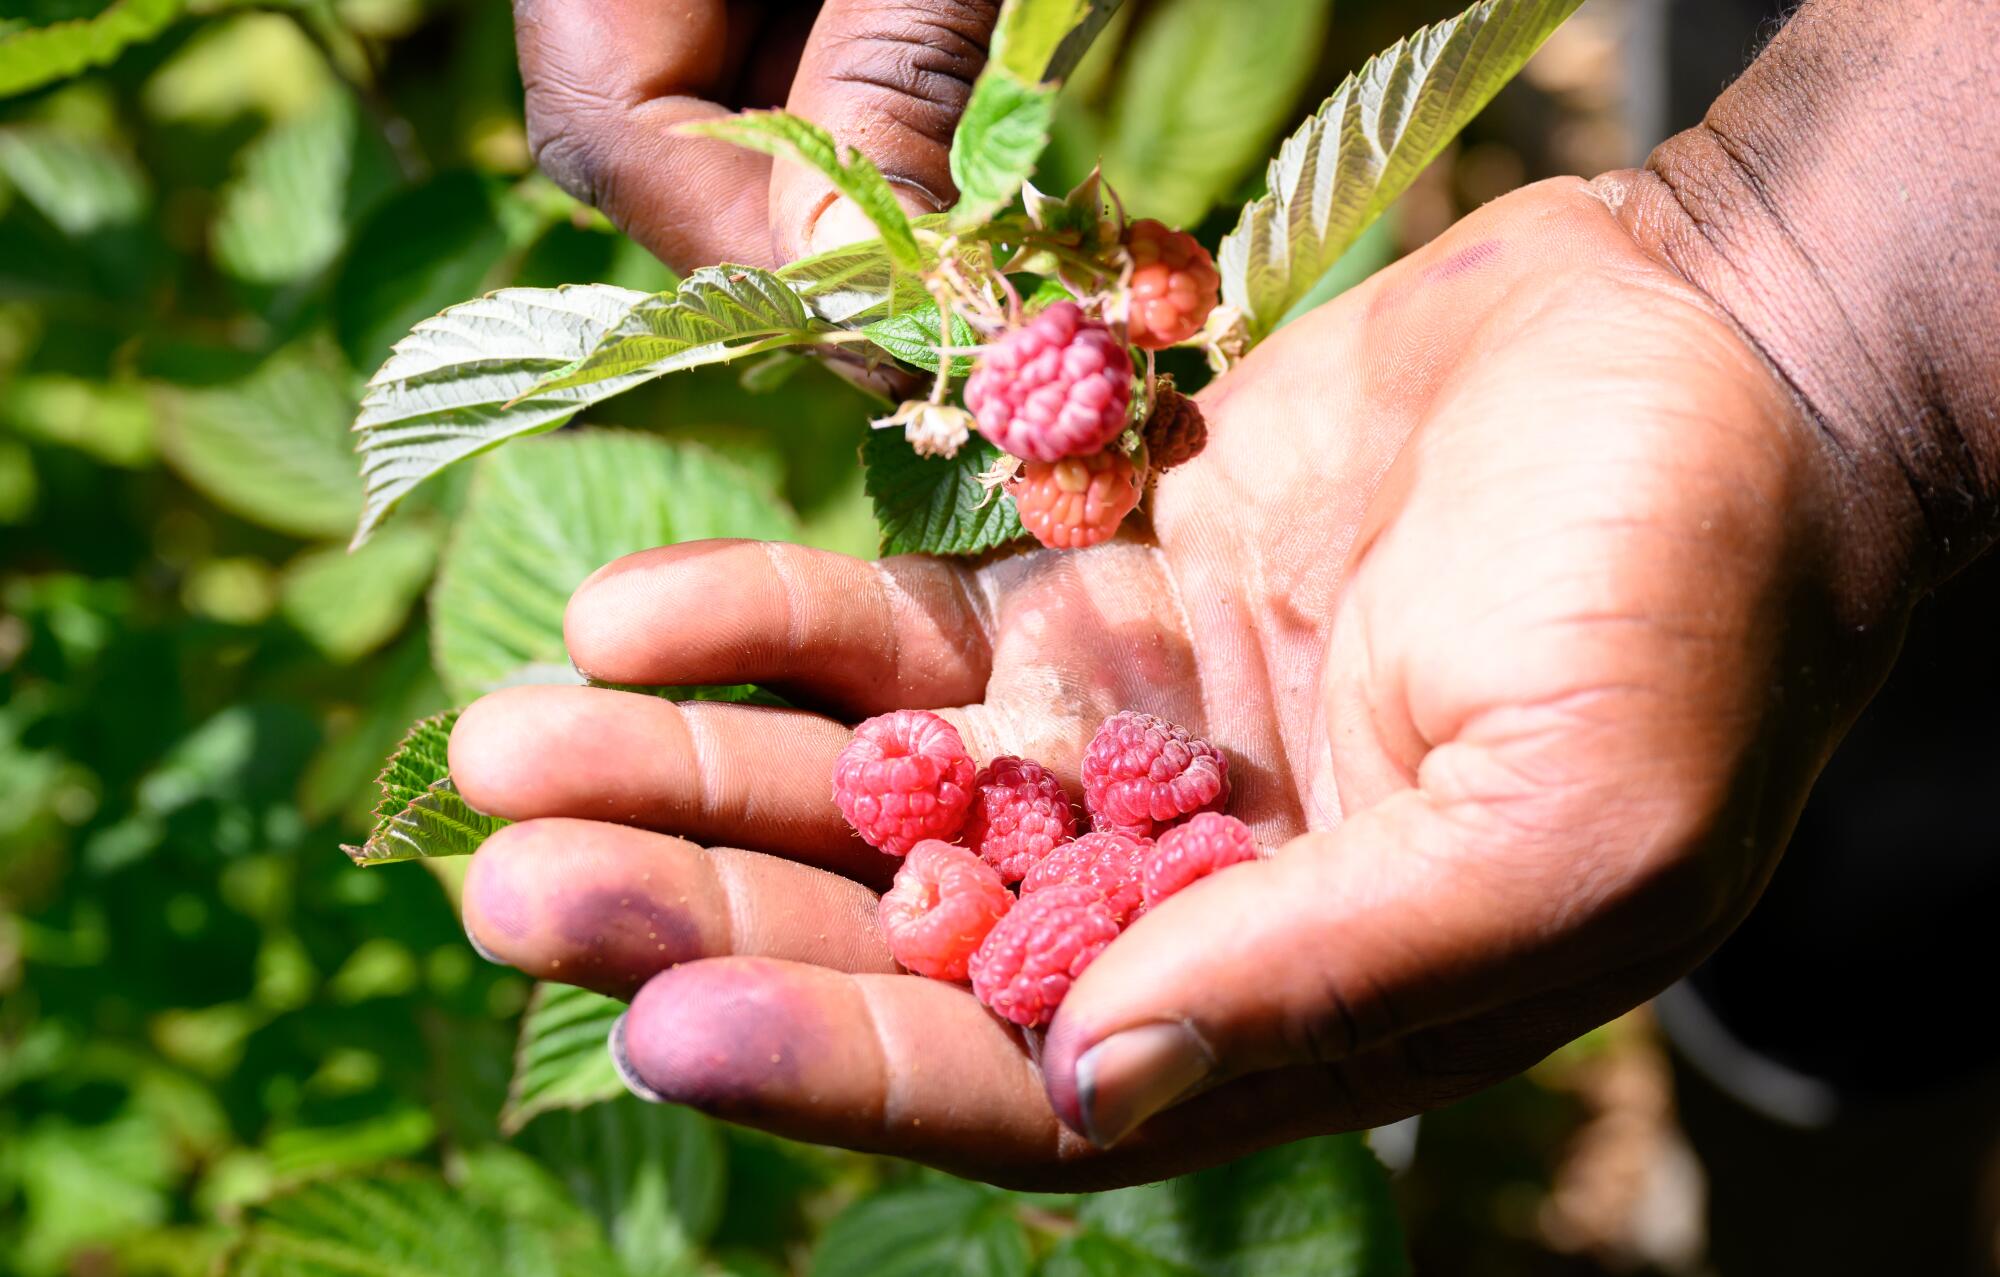 Farm manager Brent Walker displays freshly picked raspberries.